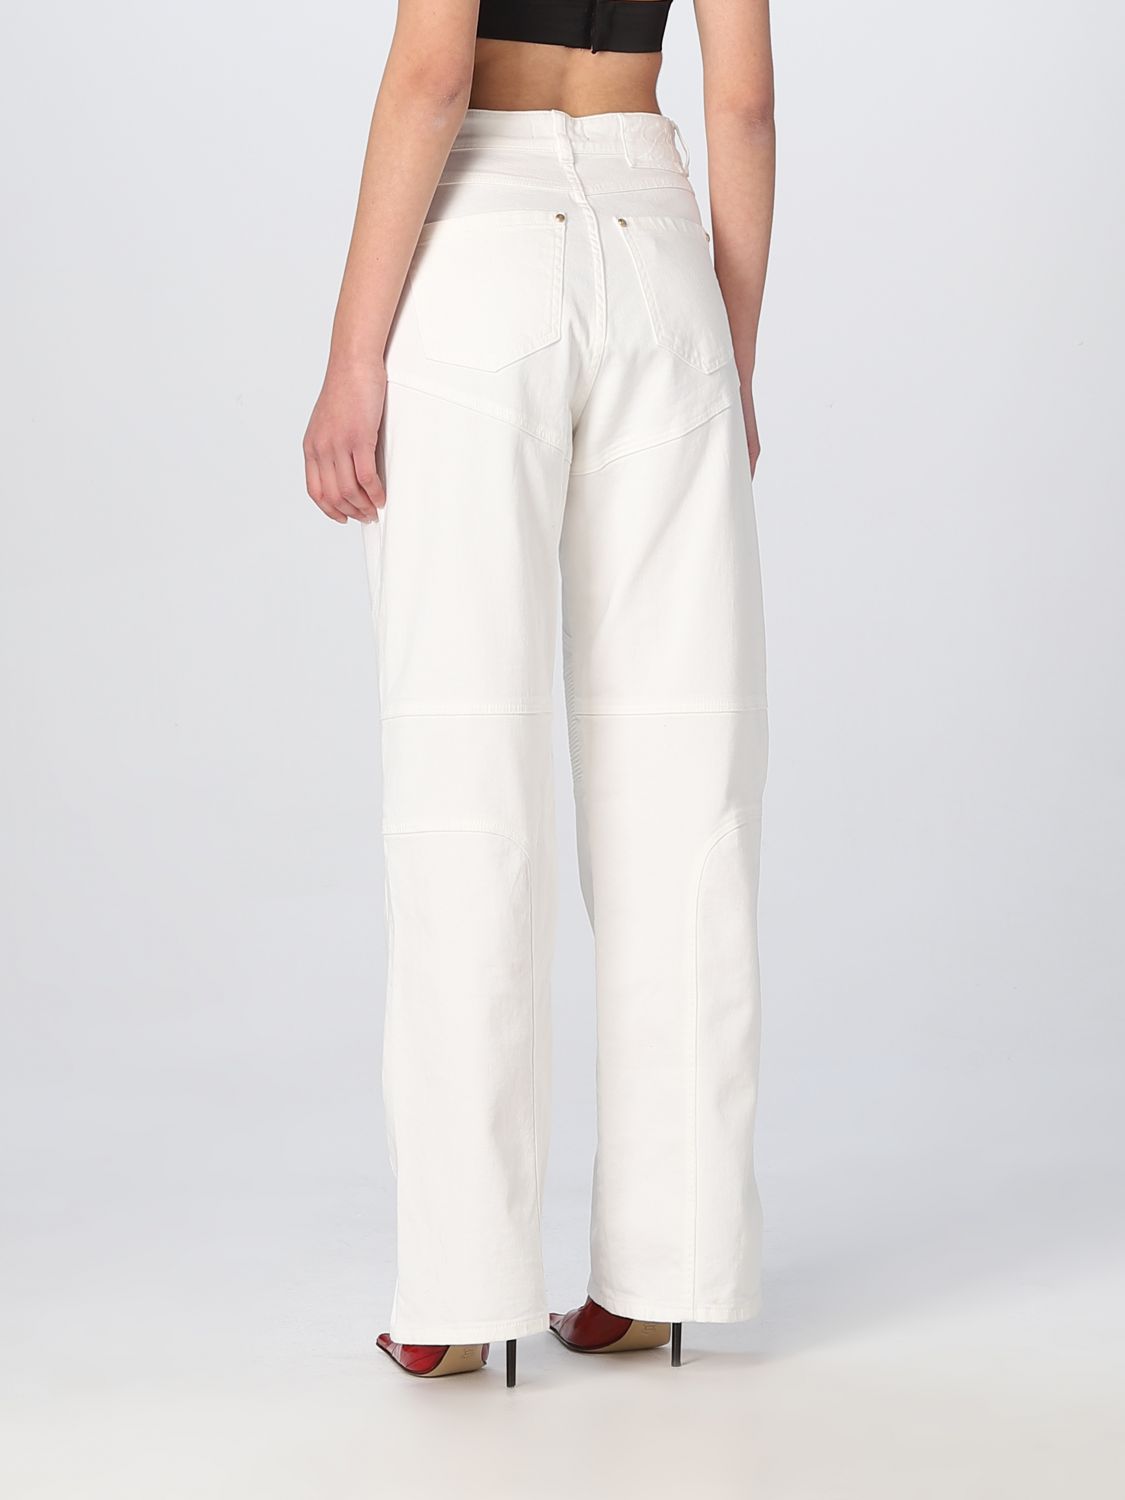 Pantalon Blumarine: Pantalon Blumarine femme blanc 3